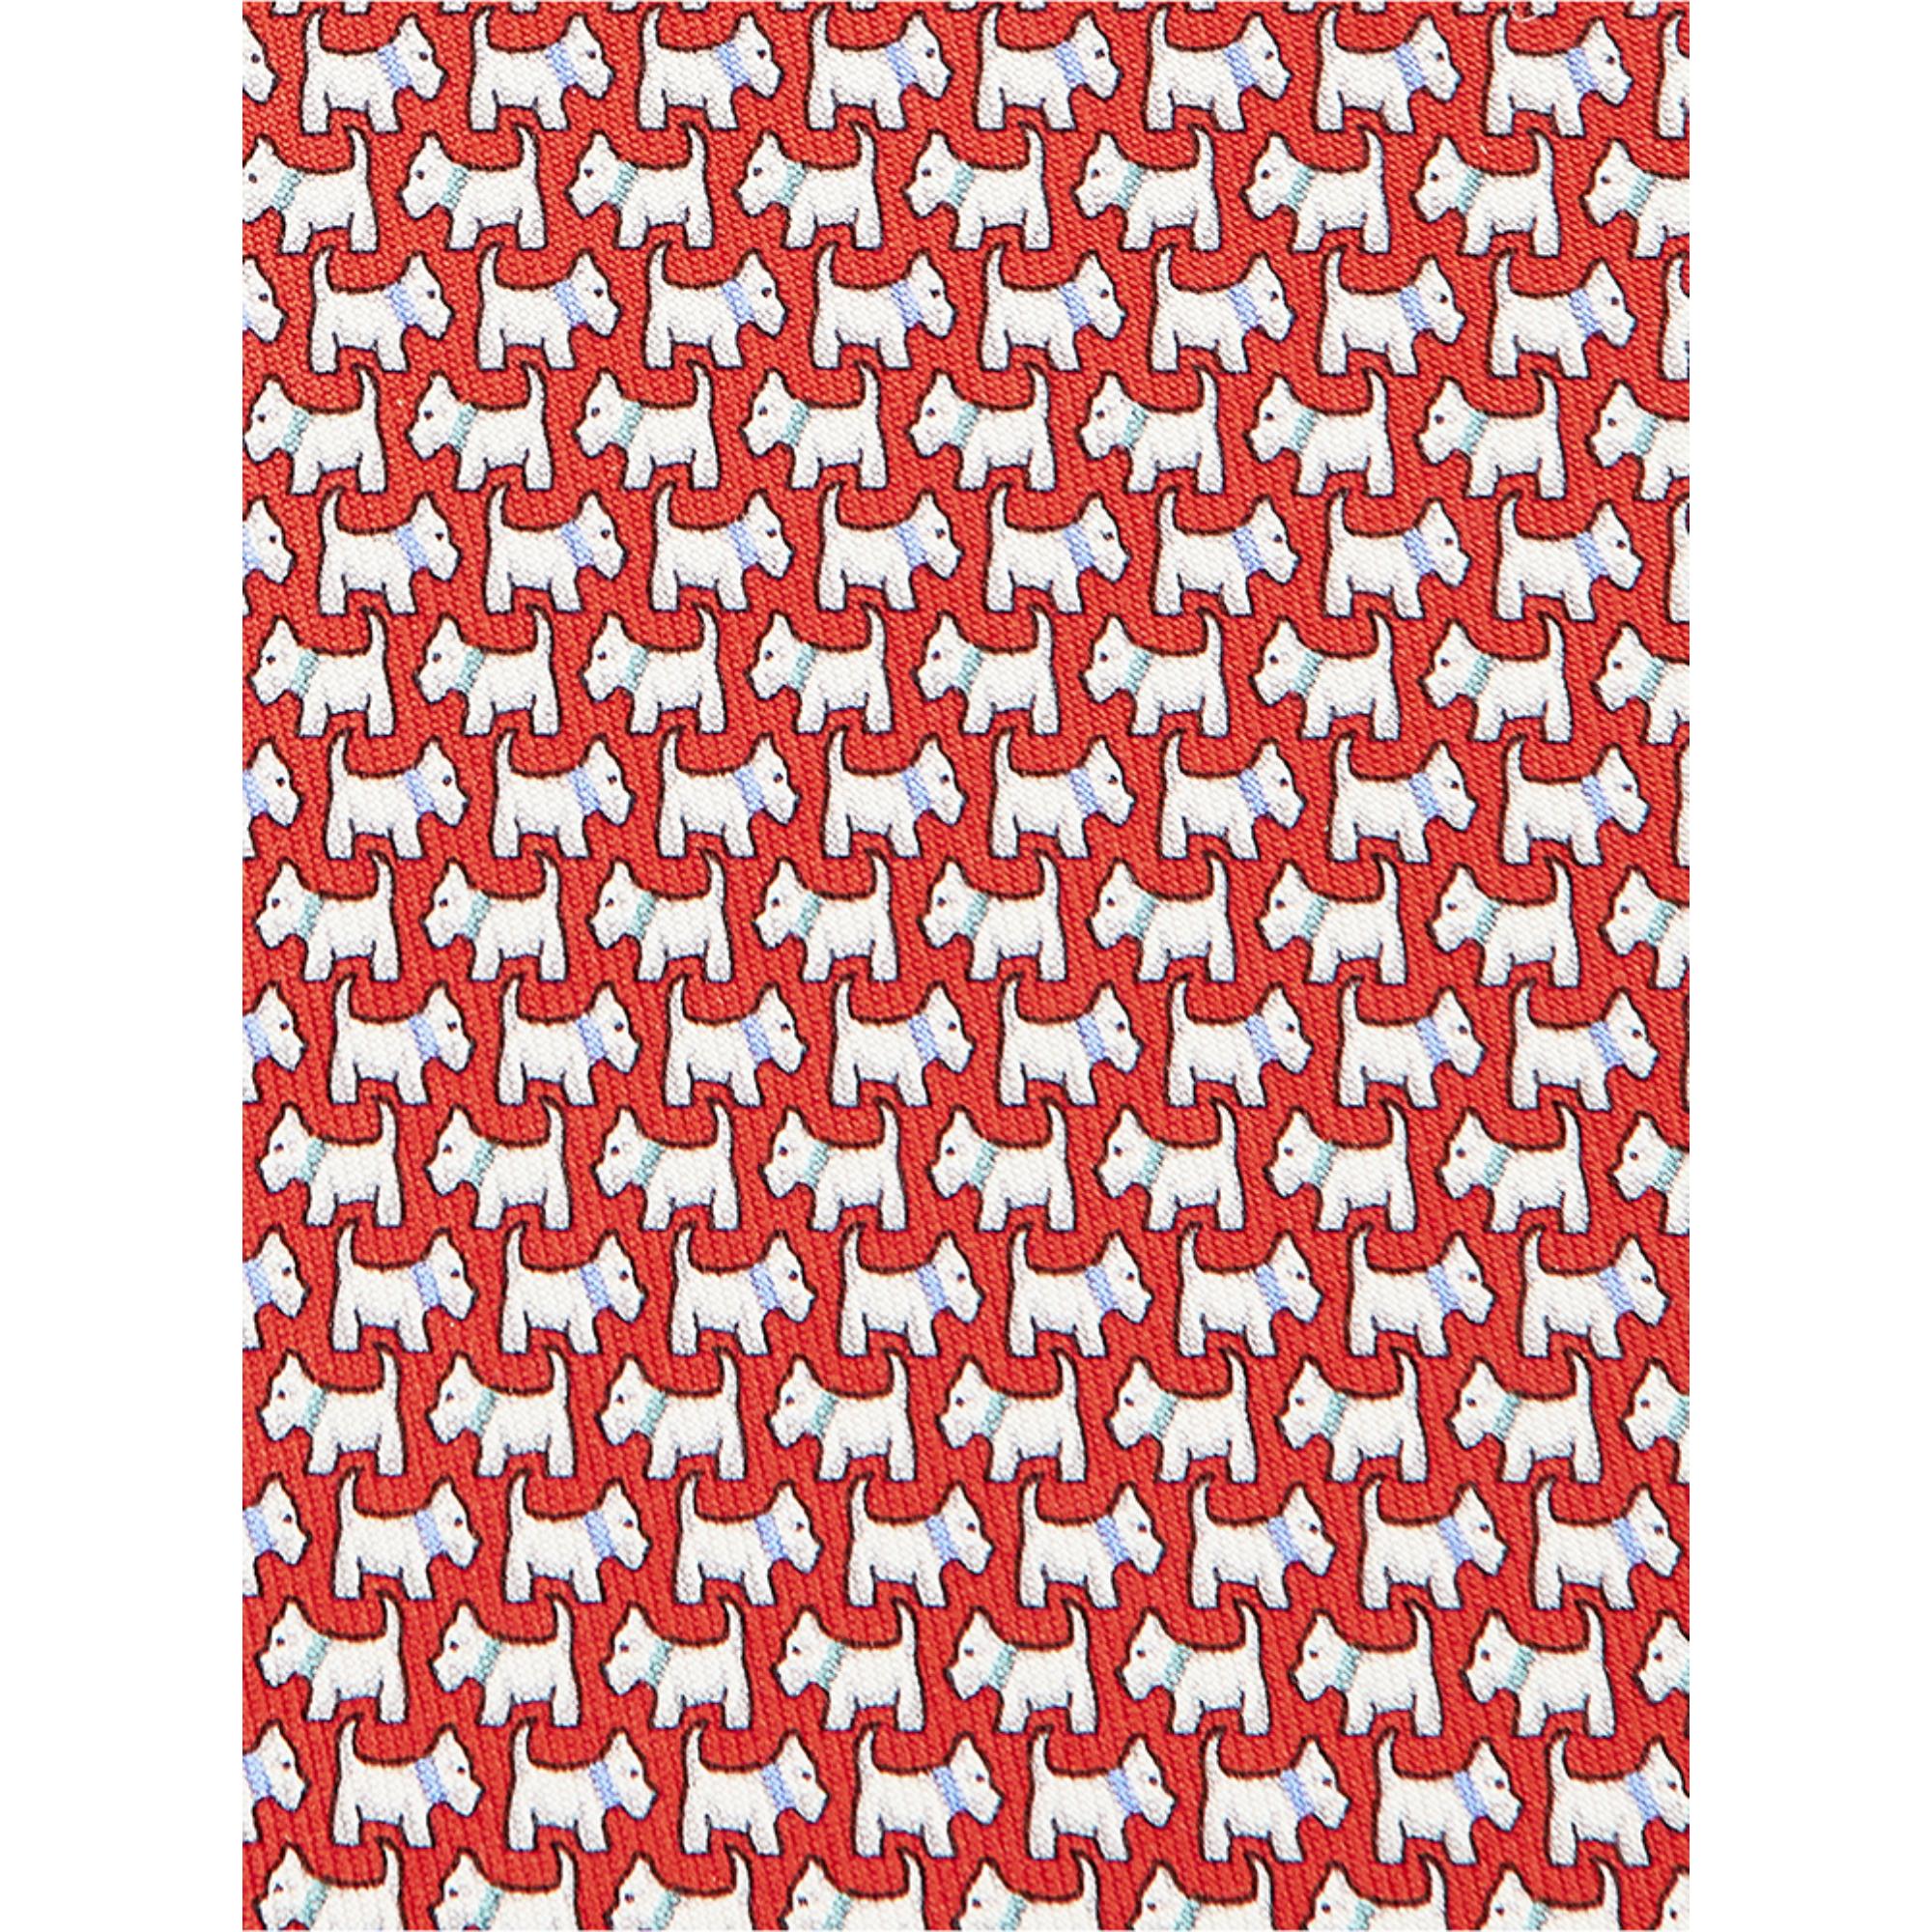 Terrier Print Silk Tie - Red